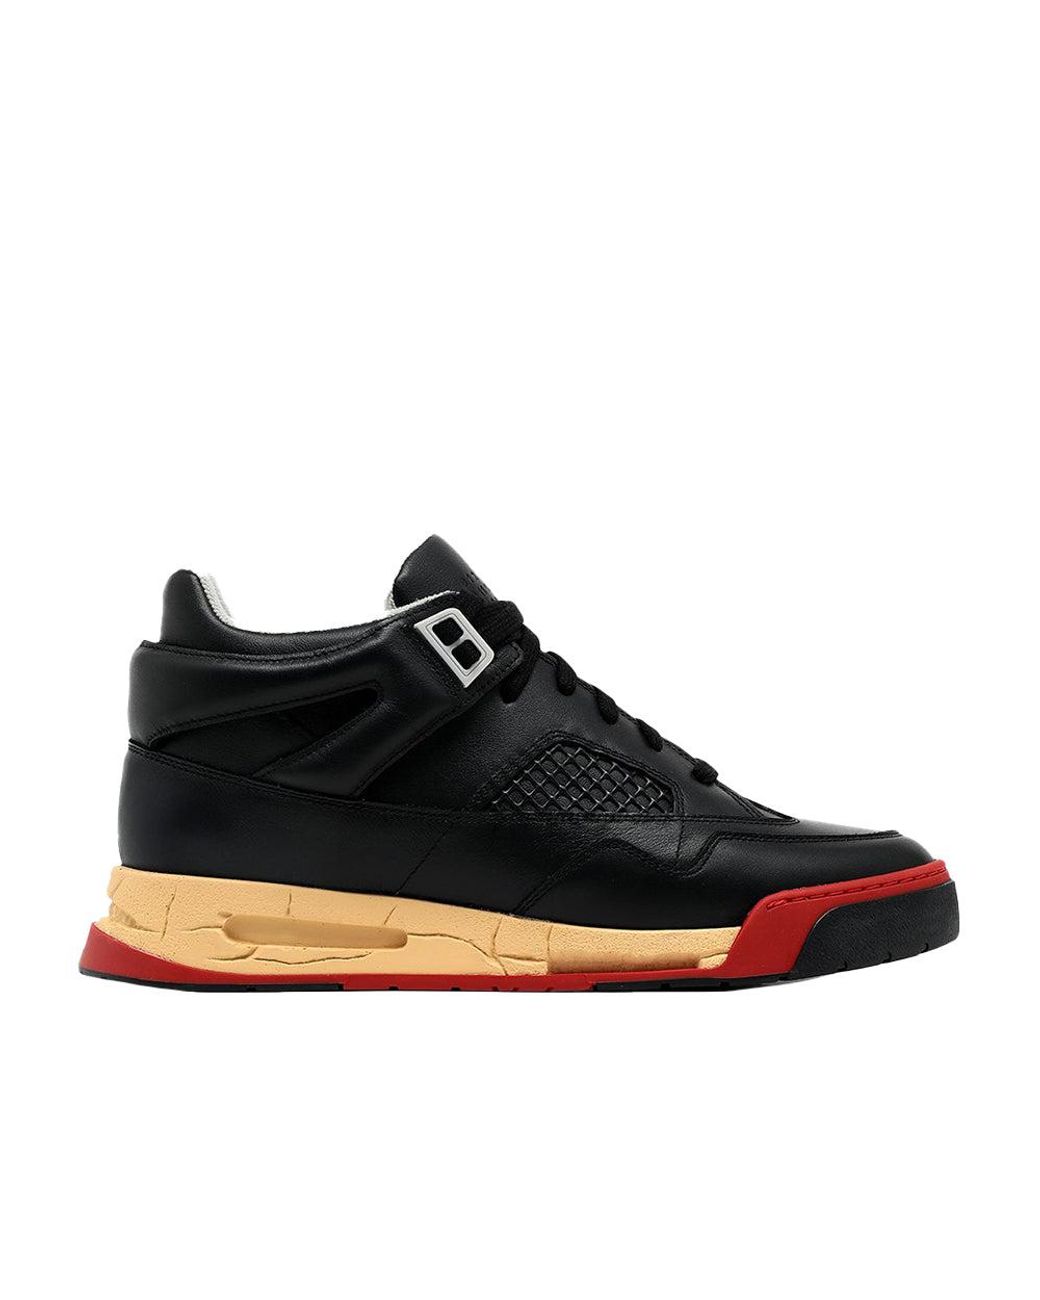 Maison Margiela Deadstock Basket Low Top Leather Sneaker Black Red 